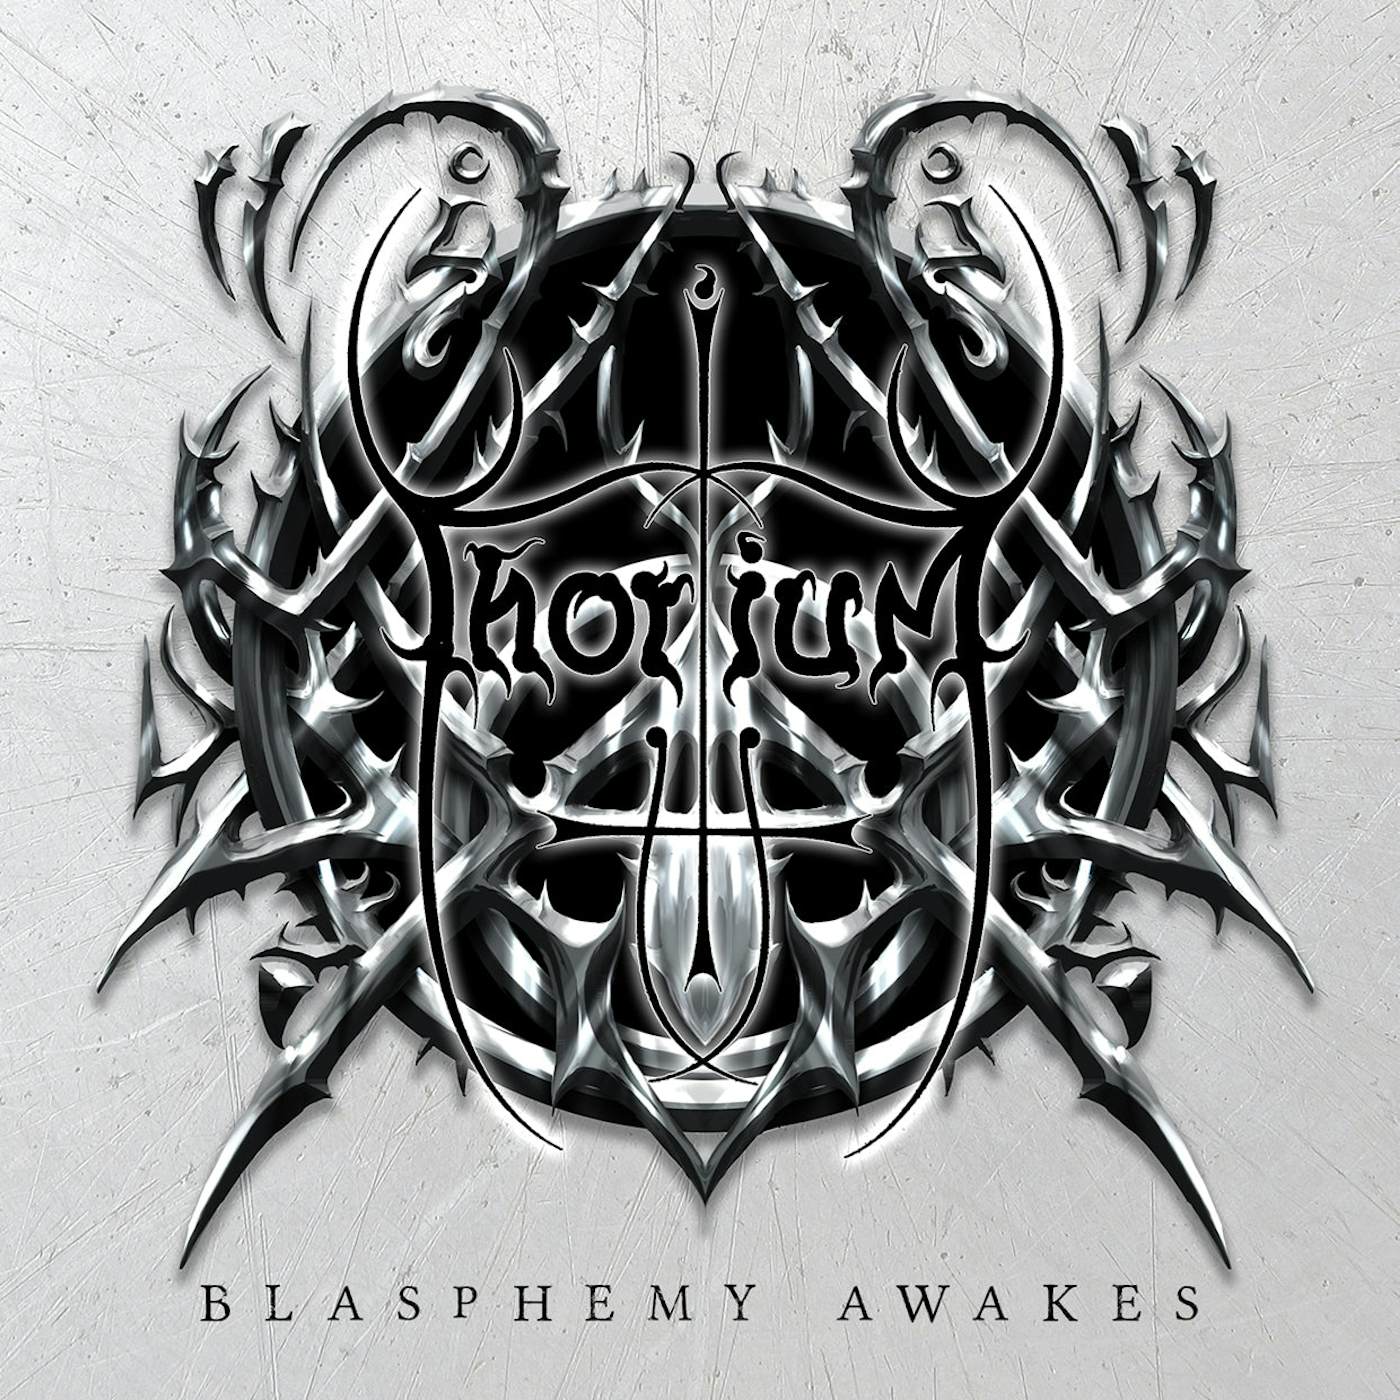 Thorium LP - Blasphemy Awakes (Vinyl)